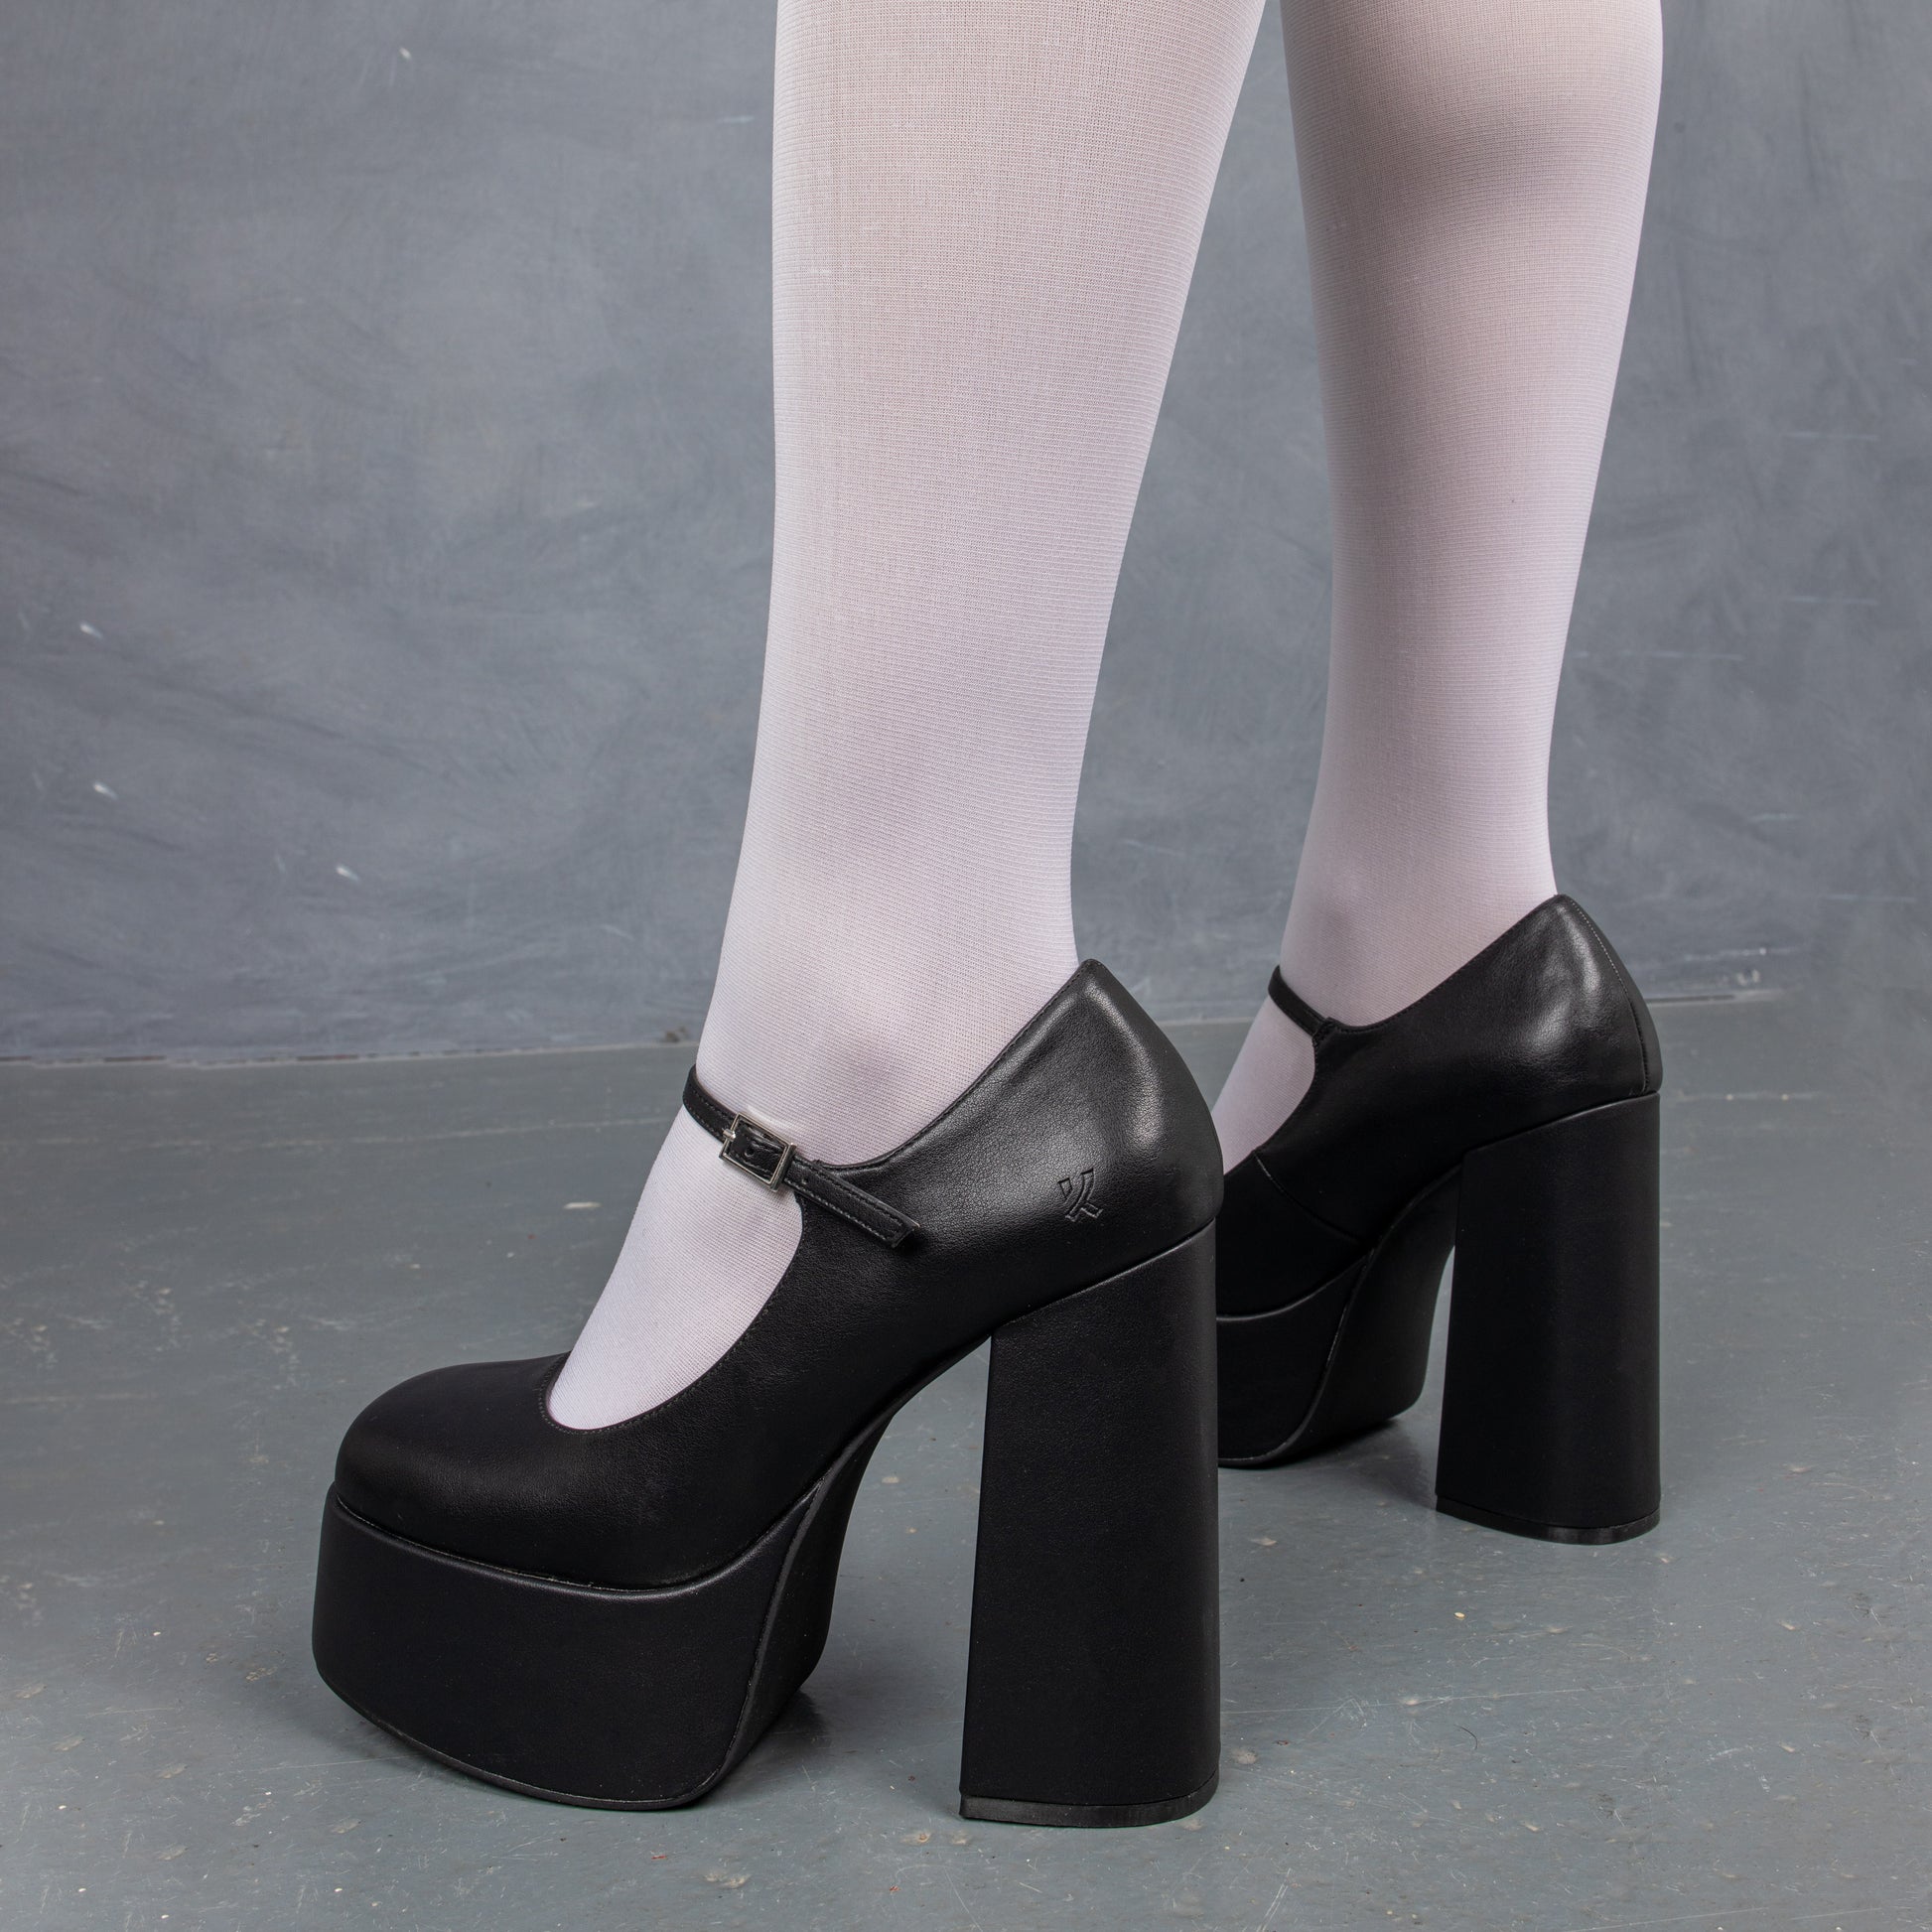 Darkbloom Black Platform Heels - Shoes - KOI Footwear - Black - Model Back View